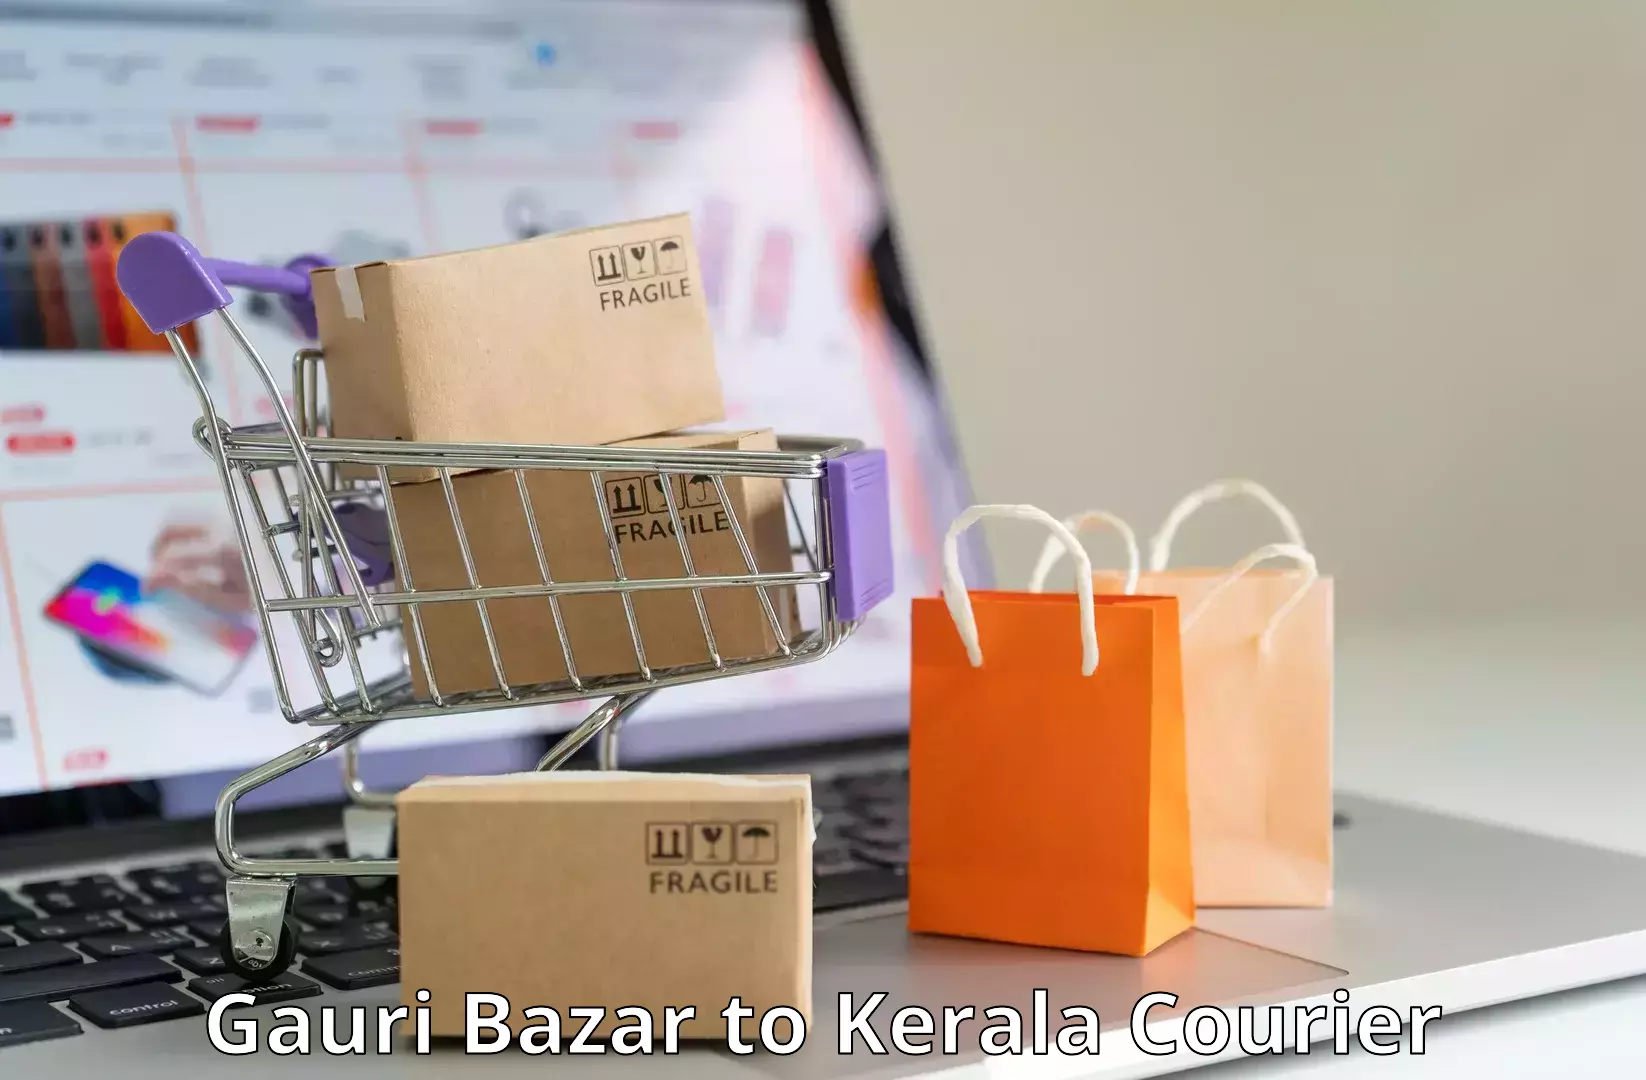 Next-day delivery options Gauri Bazar to Kattappana